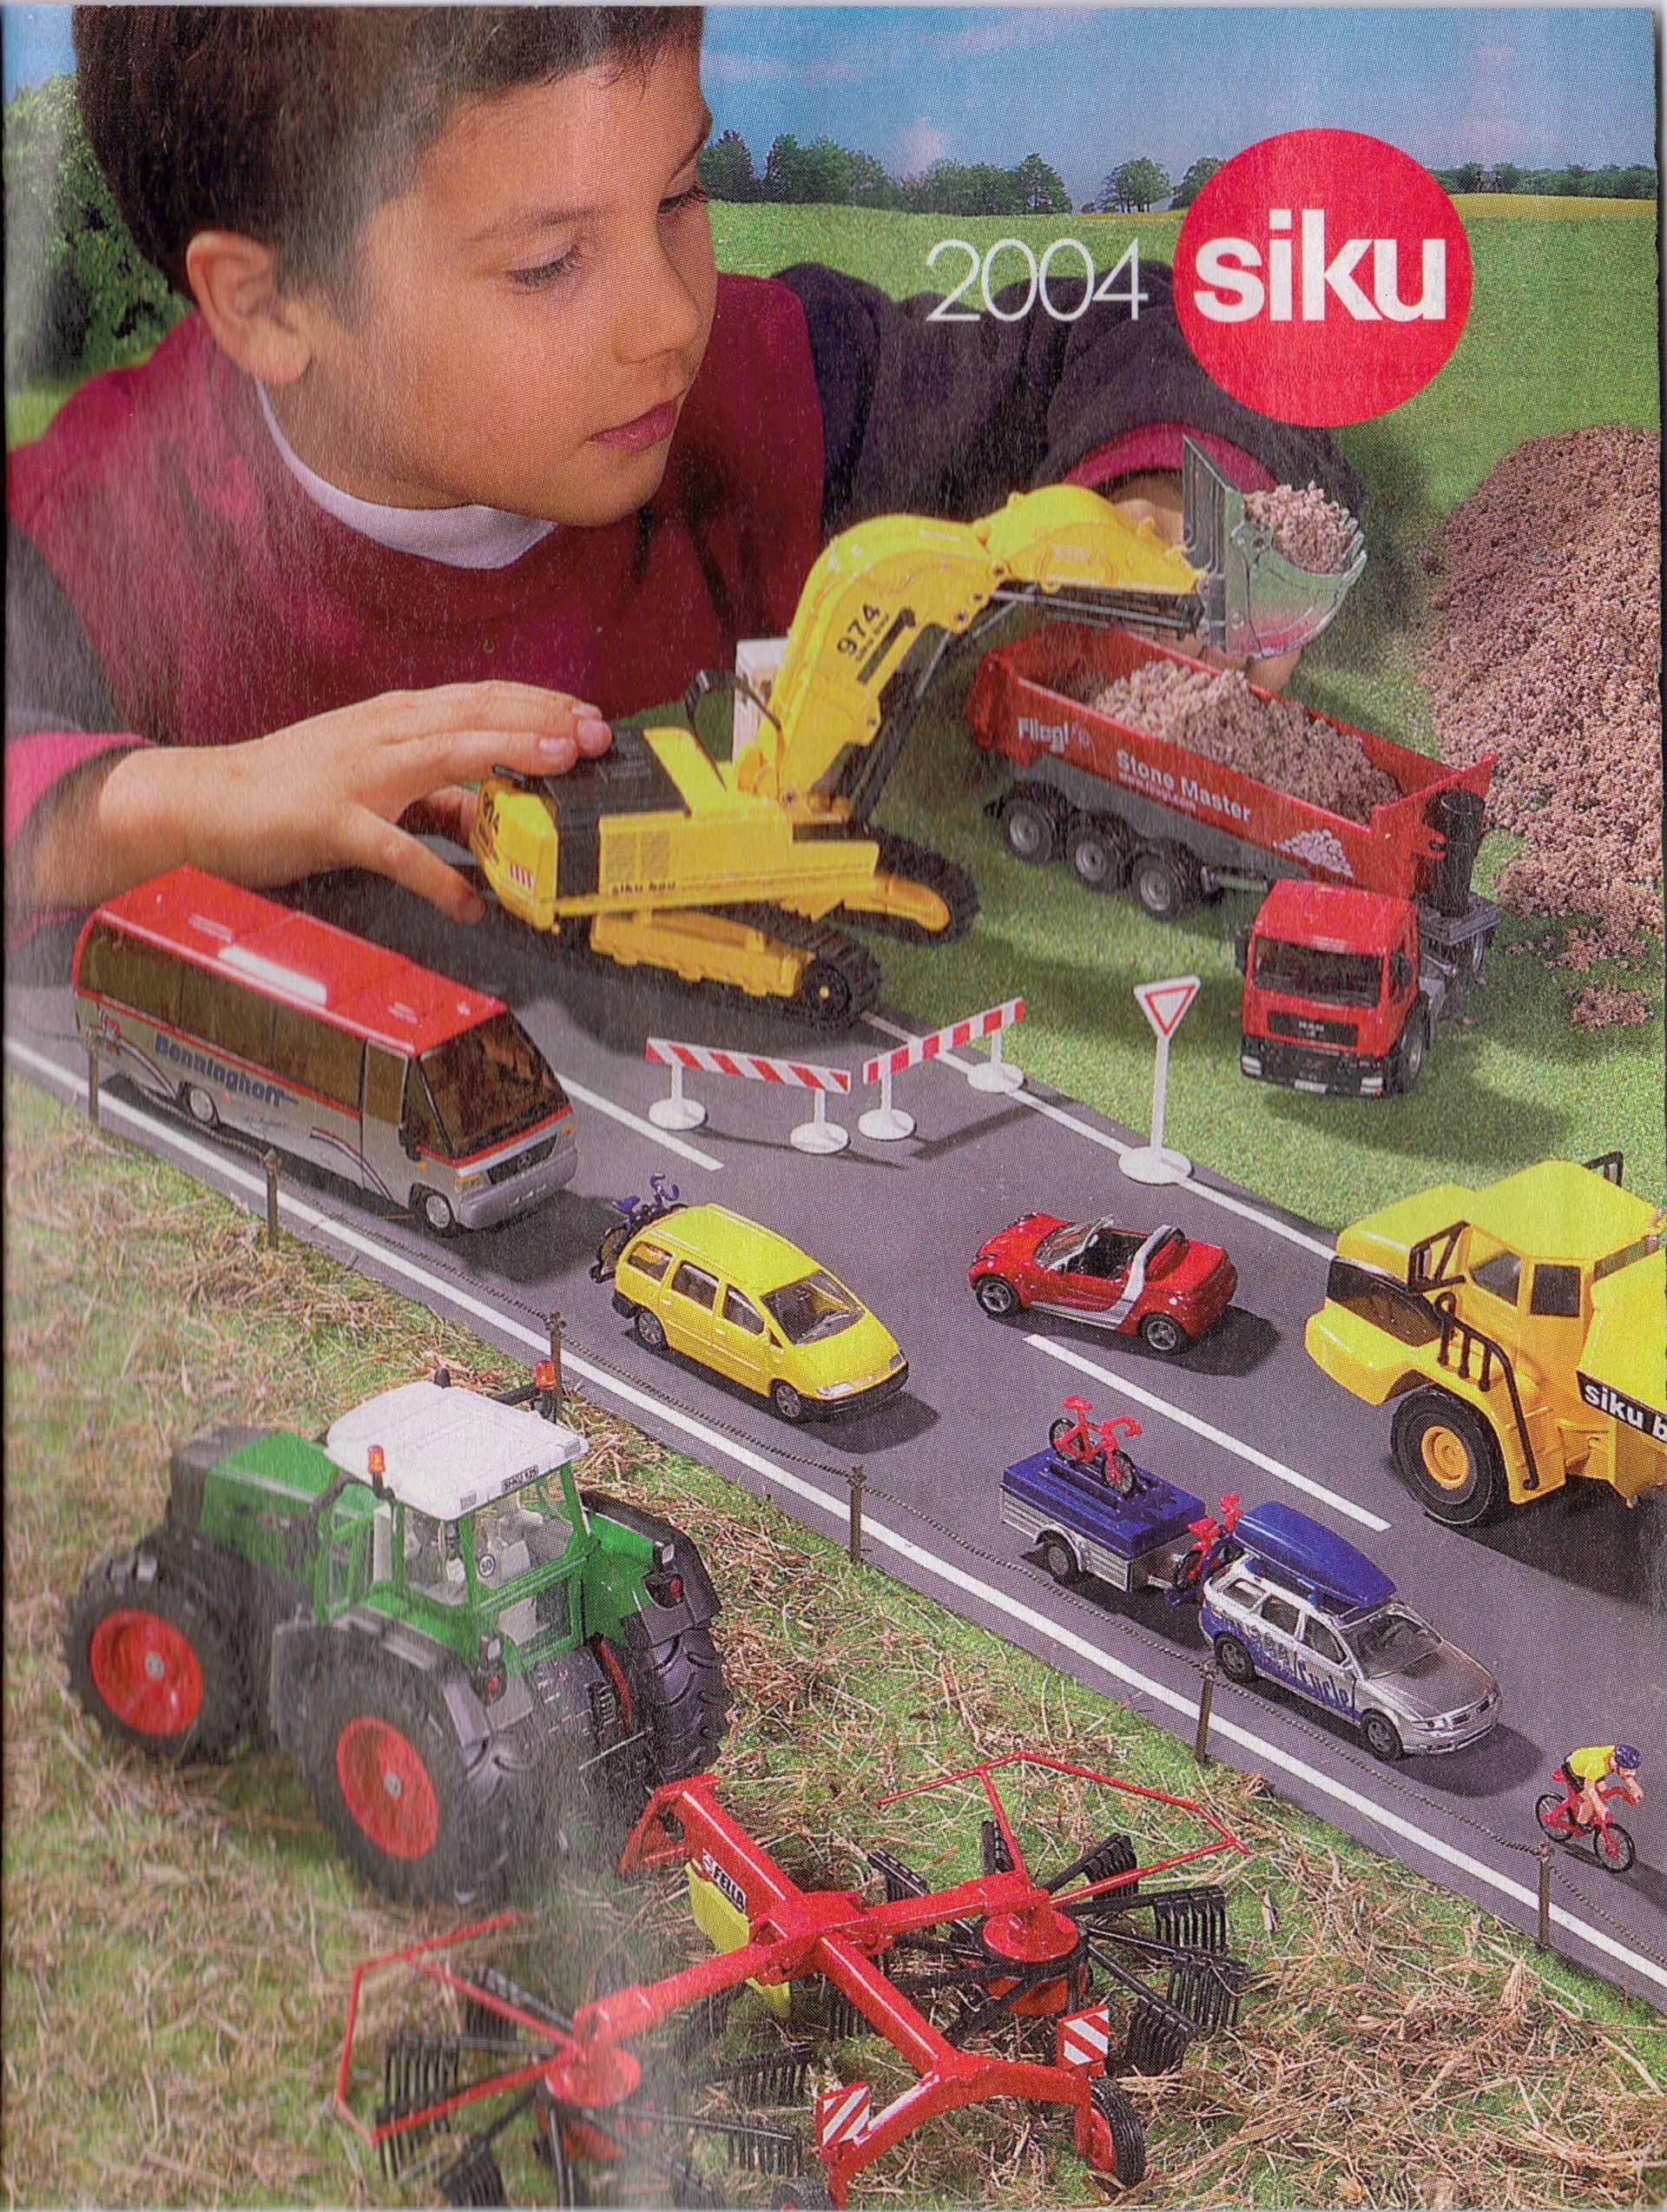 Siku catalogue 2004